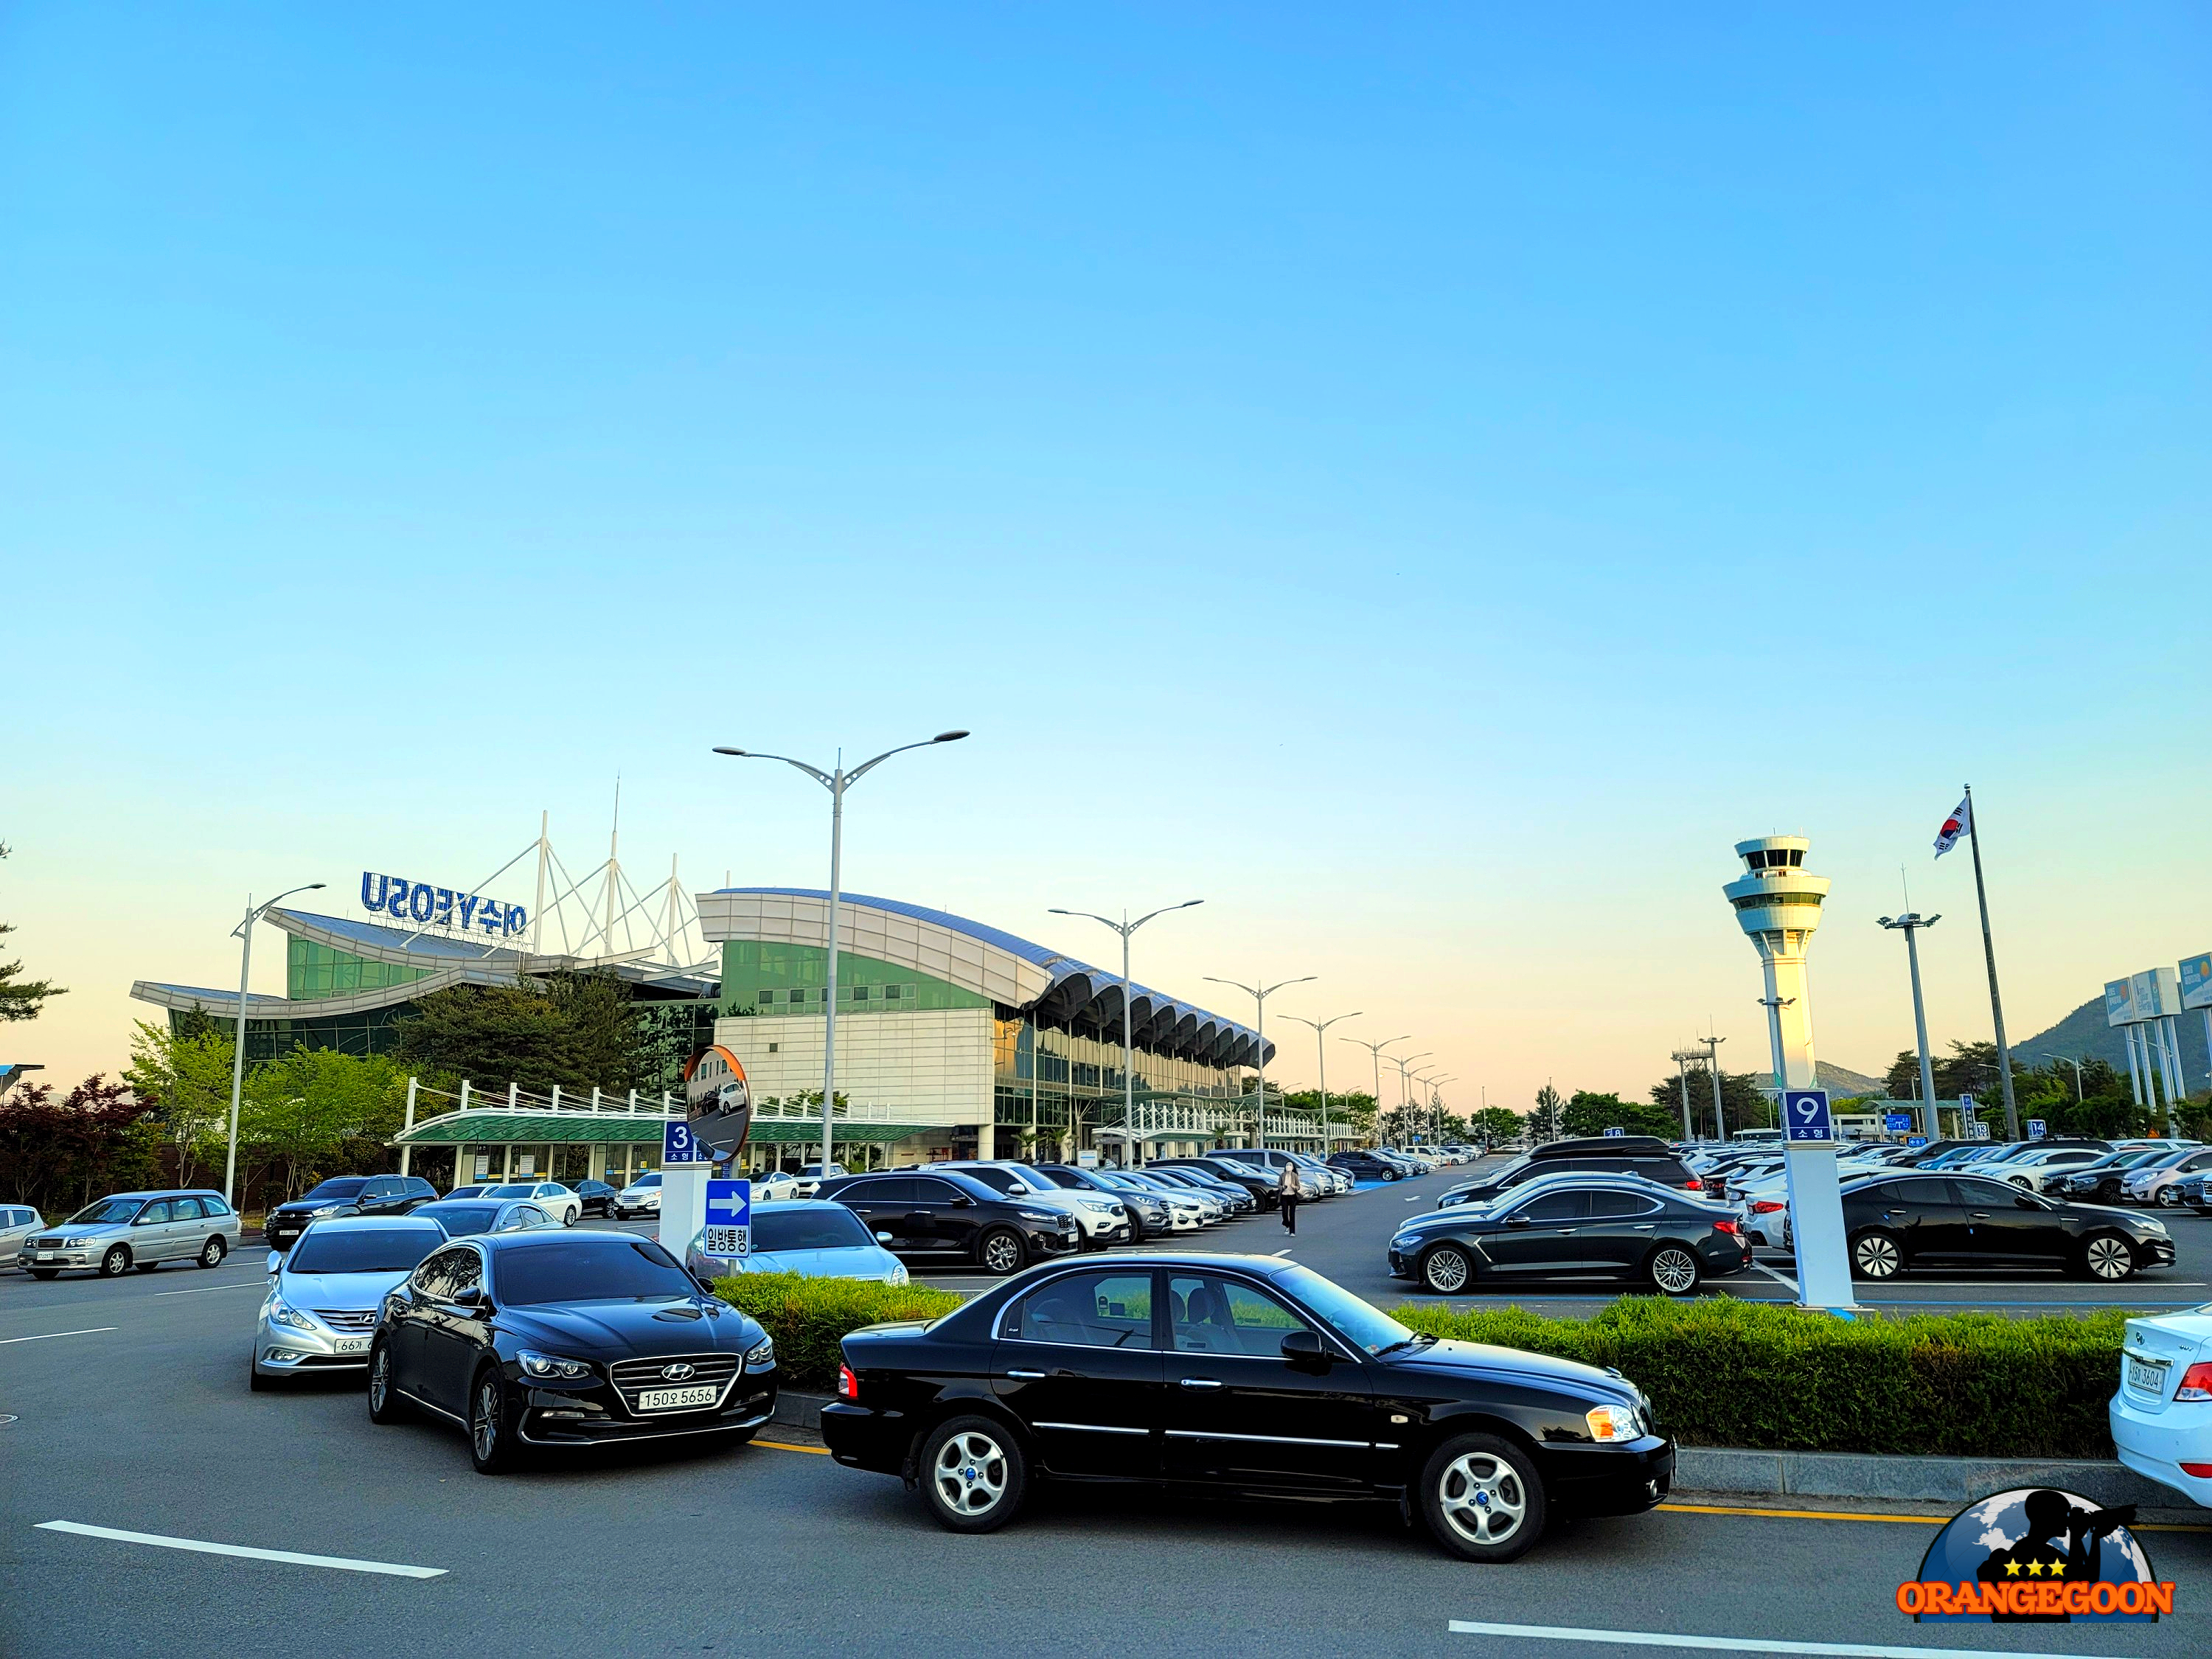 (전남 여수 / 여수공항 #3) 남도의 아름다운 풍경을 가장 빠르게 만나러 가는 길. 여수공항 Yeosu Airport 麗水空港